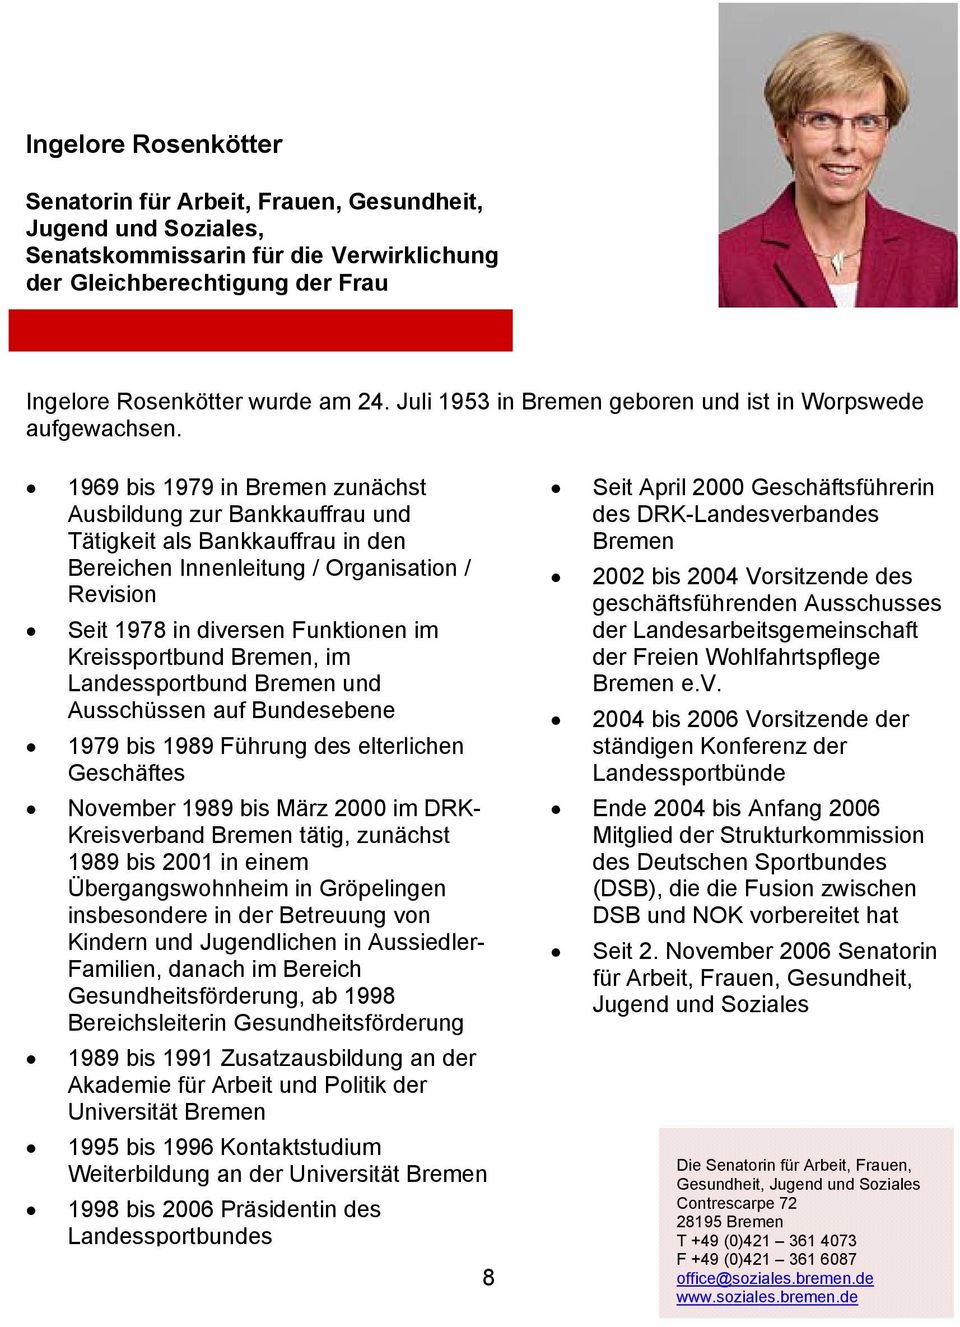 1969 bis 1979 in Bremen zunächst Ausbildung zur Bankkauffrau und Tätigkeit als Bankkauffrau in den Bereichen Innenleitung / Organisation / Revision Seit 1978 in diversen Funktionen im Kreissportbund